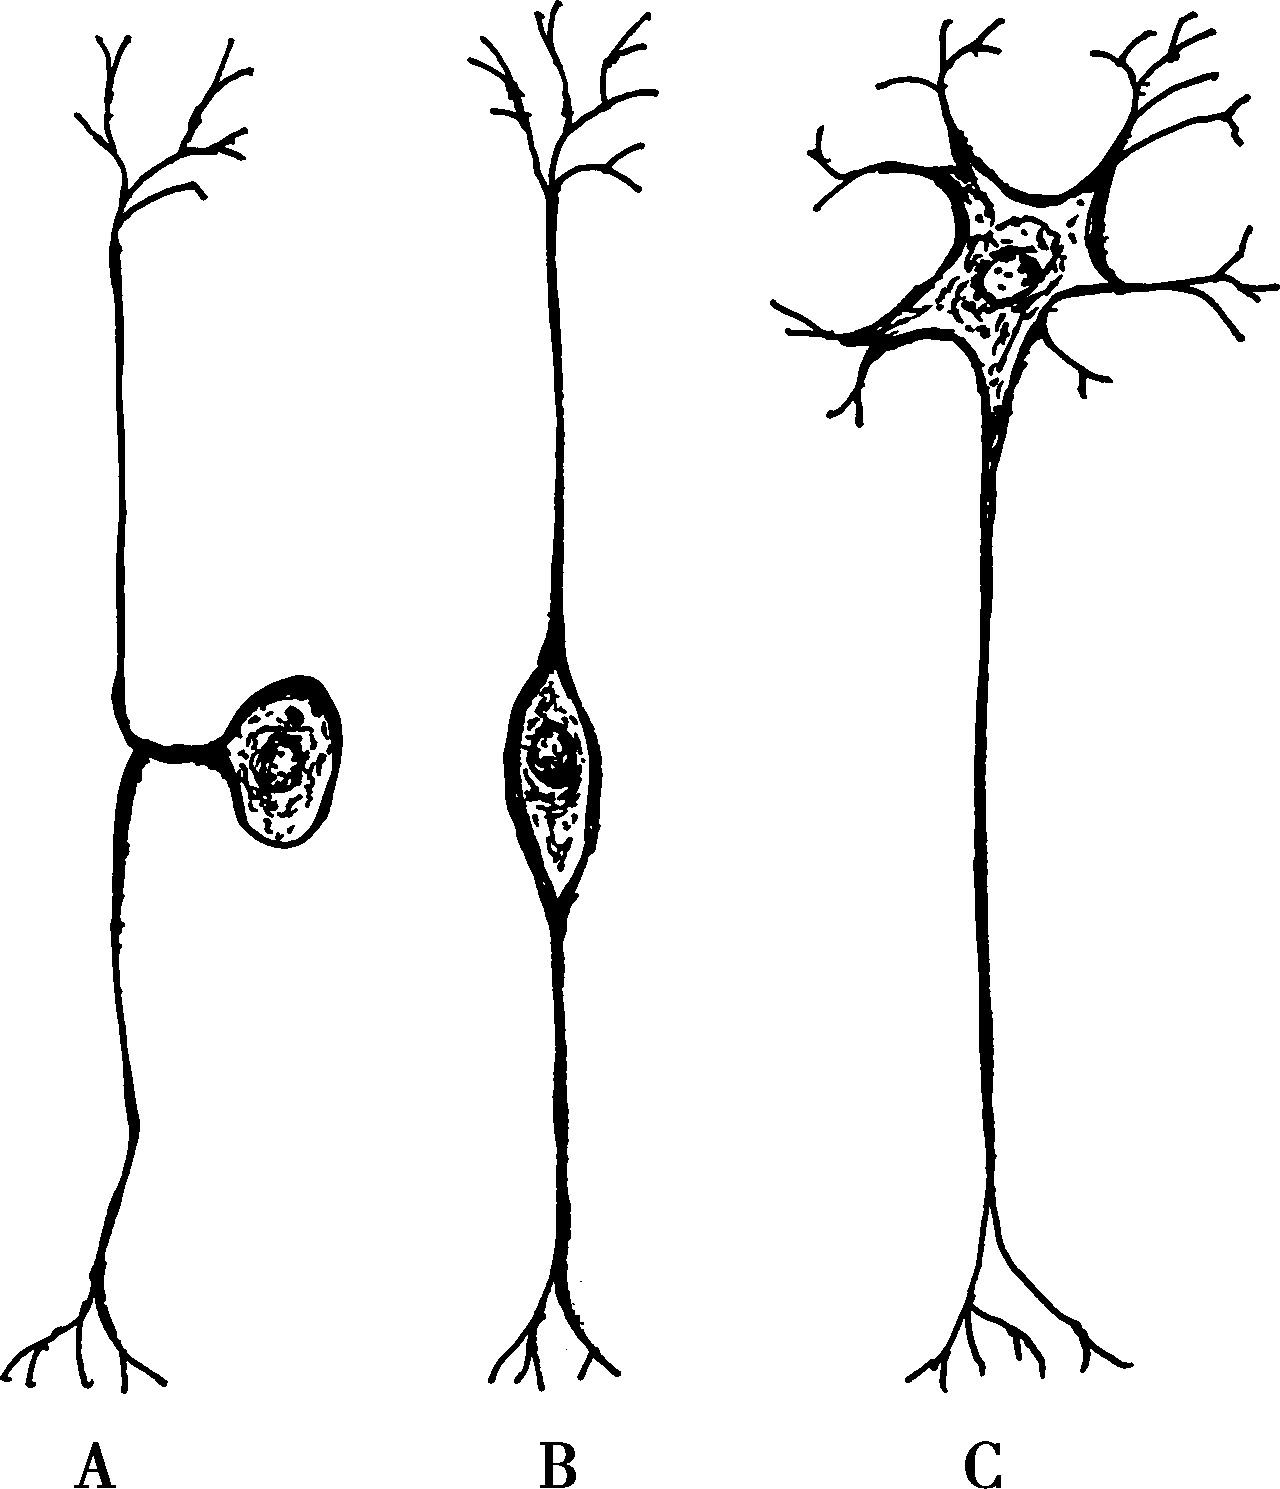 如脊神经节和三叉神经节感觉神经元,其特点是胞体发出一个突起,然后